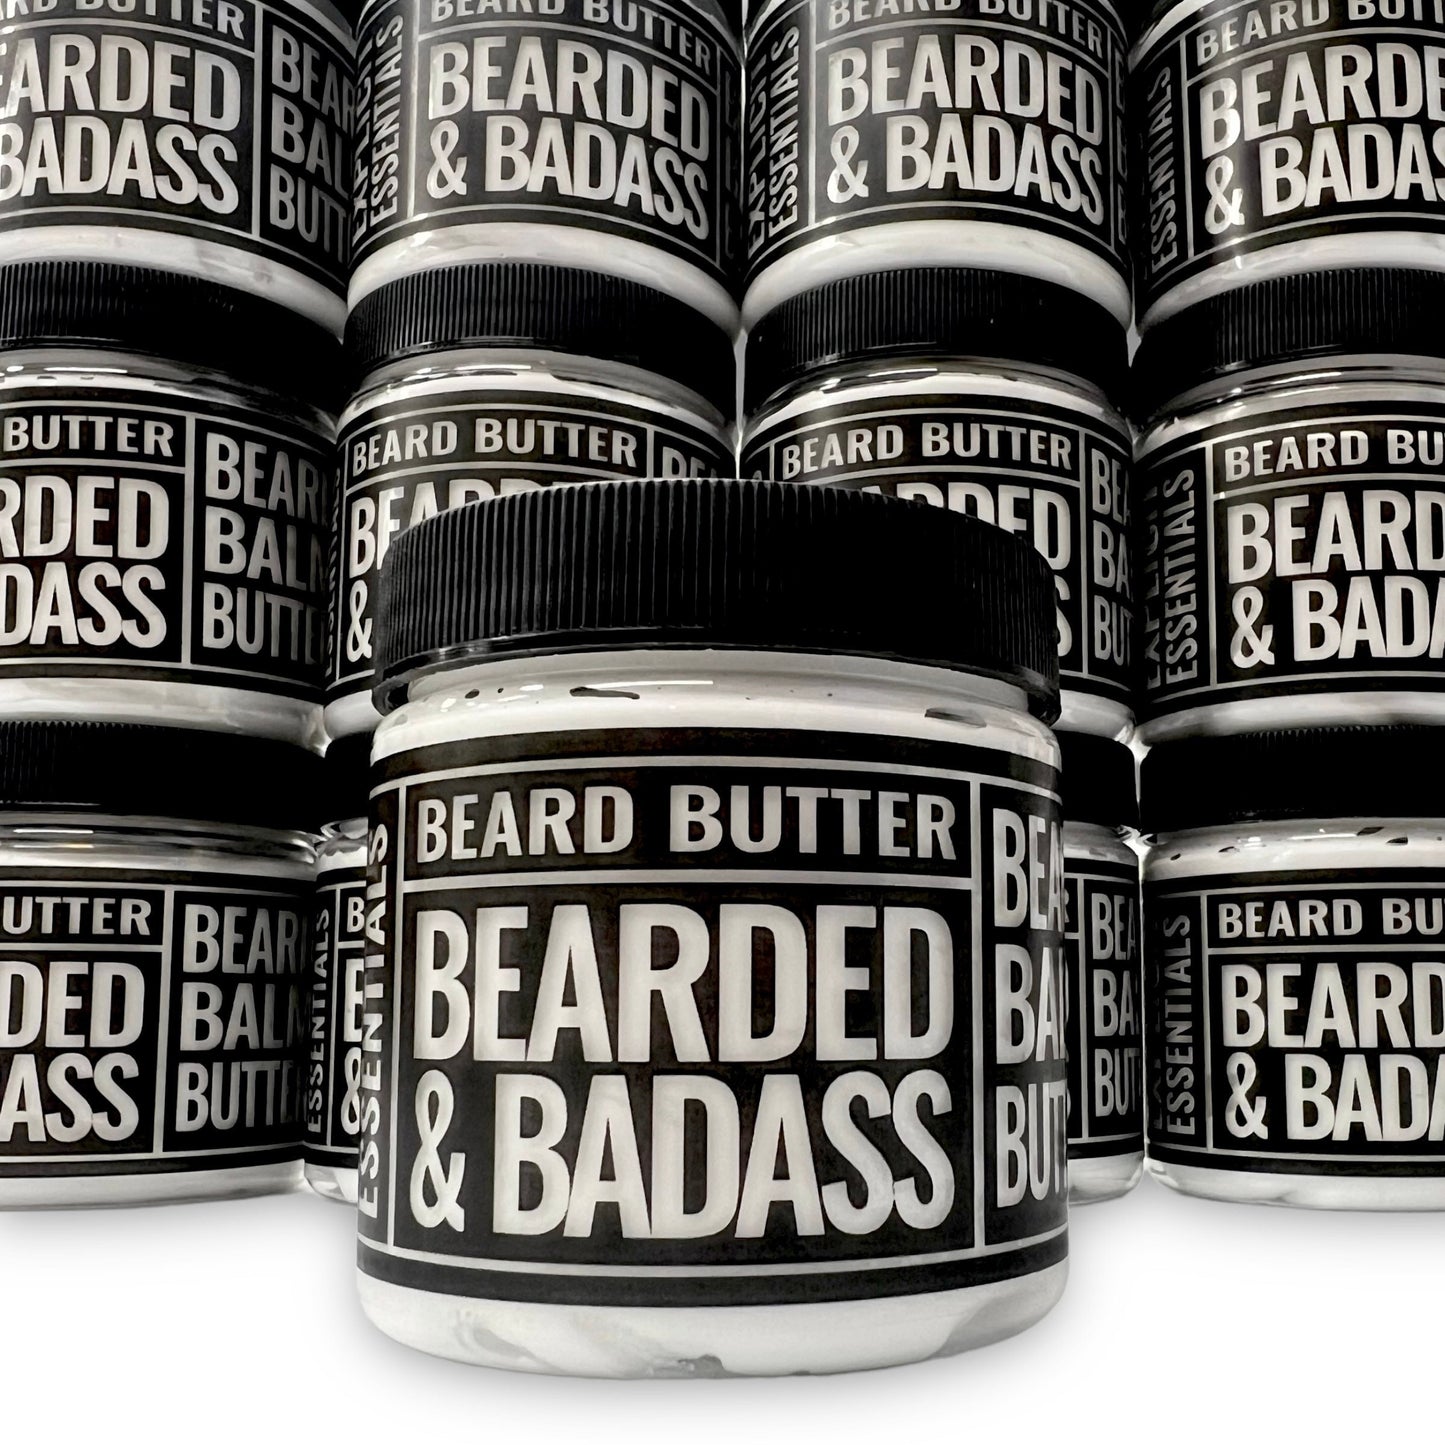 Bearded & Badass Beard Butter